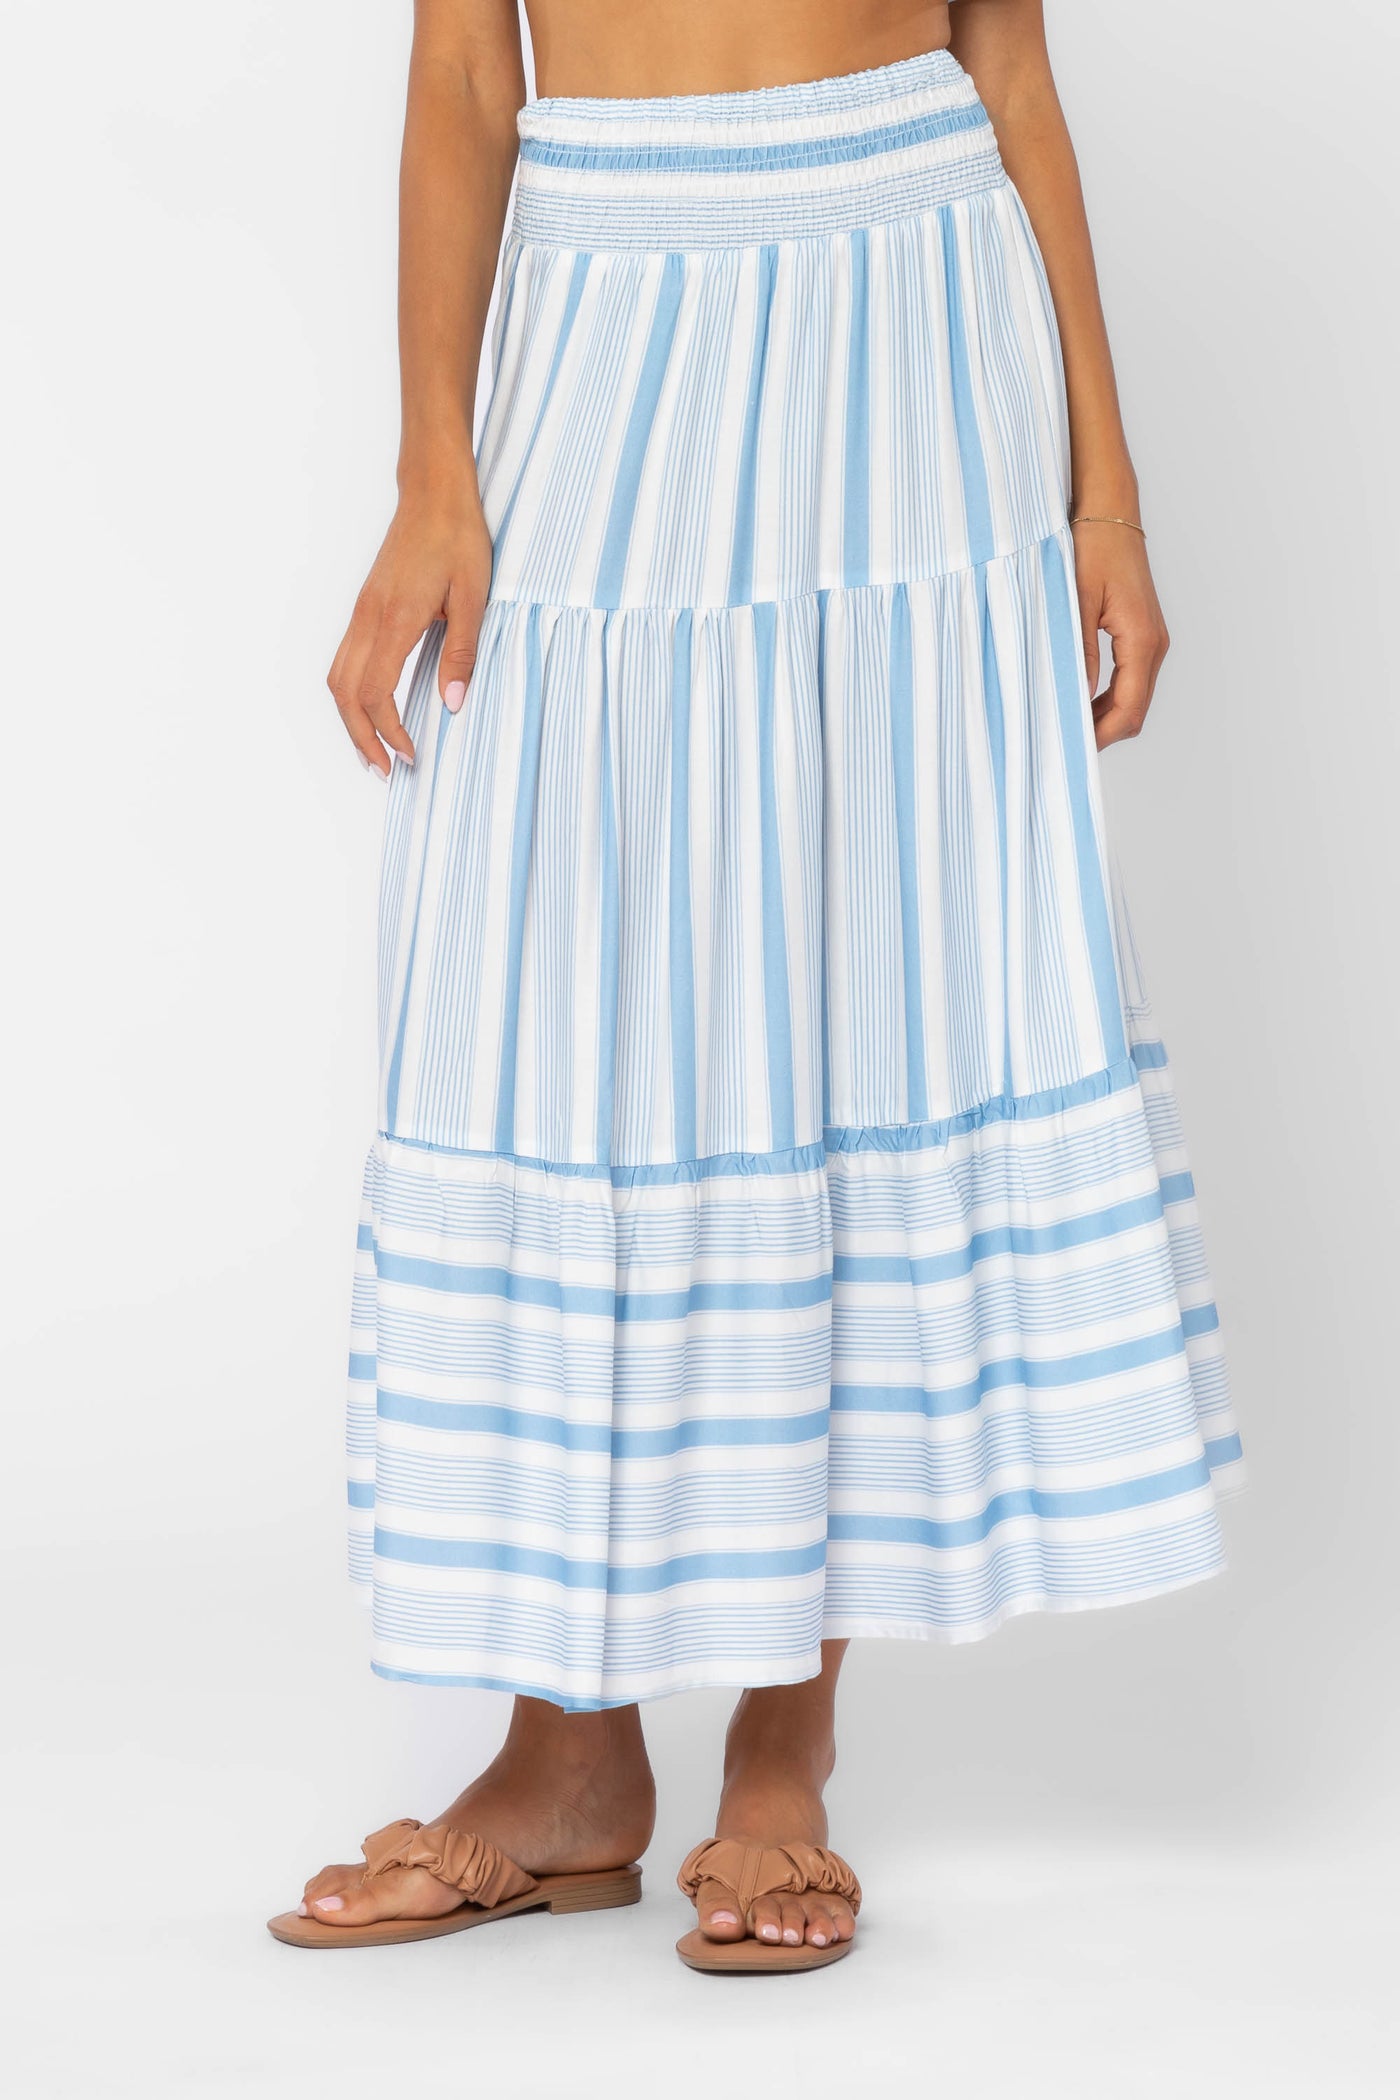 Irene Blue Stripe Skirt - Bottoms - Velvet Heart Clothing